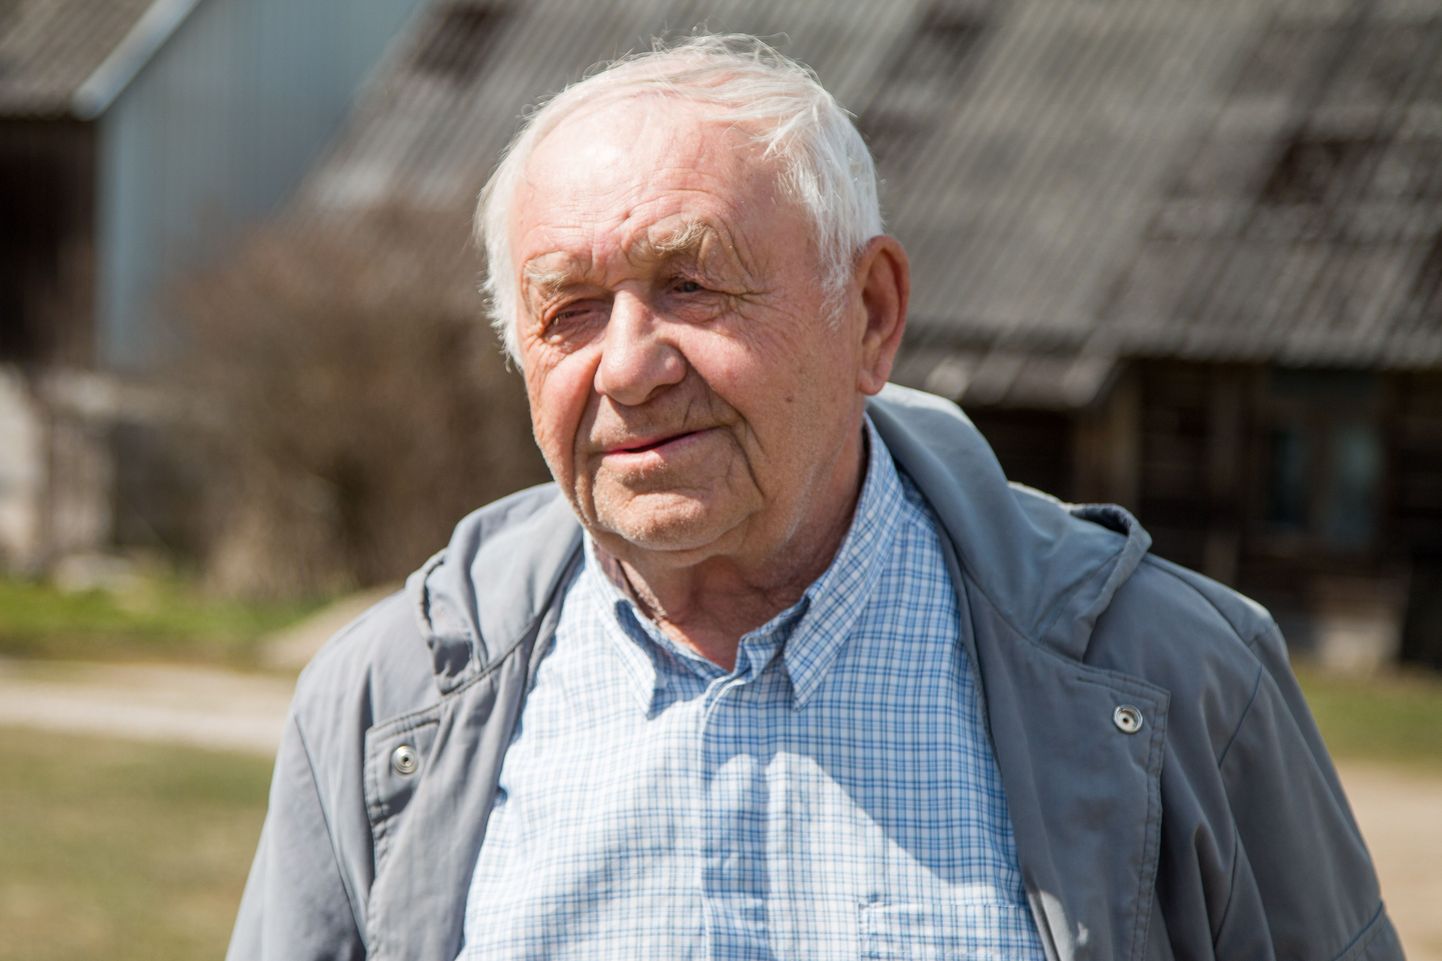 Jaan Krimses on tegus maamees, kes ka pensionipõlves jõude ei istu. Nüüd kevadelgi vaja põld maha teha ja mesilastega toimetada.